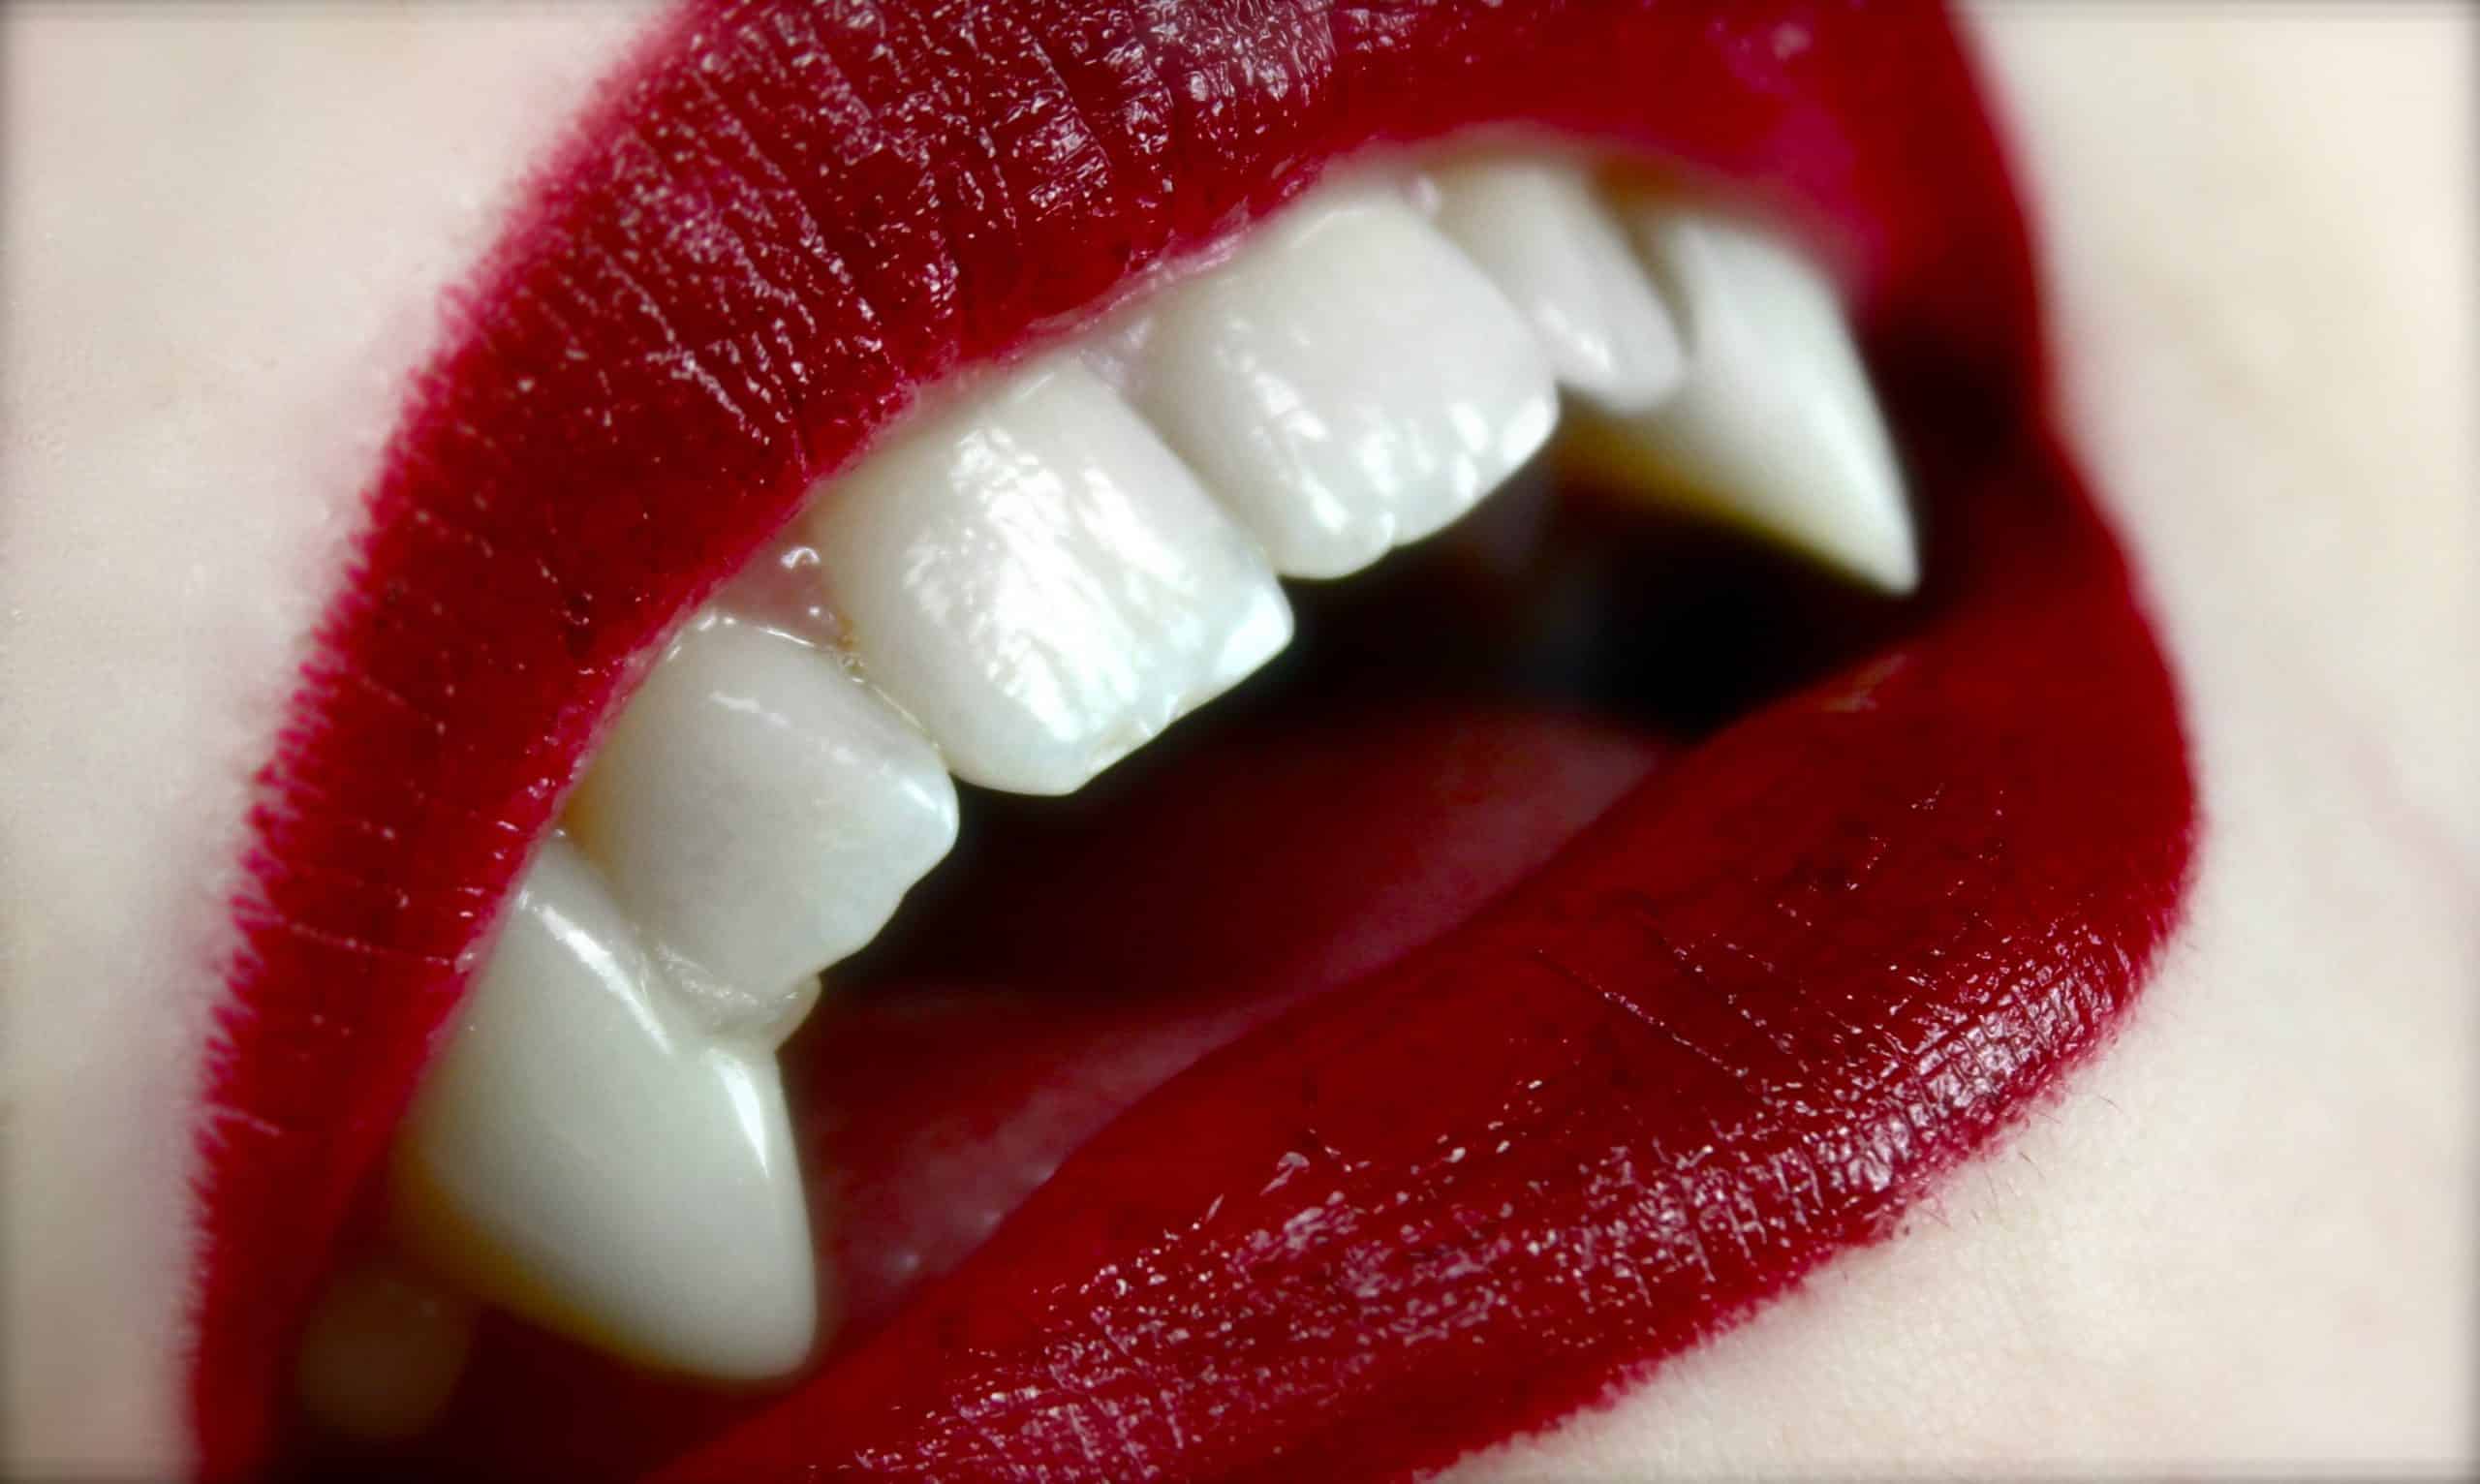 Quanto tempo um vampiro levaria para sugar seu sangue?